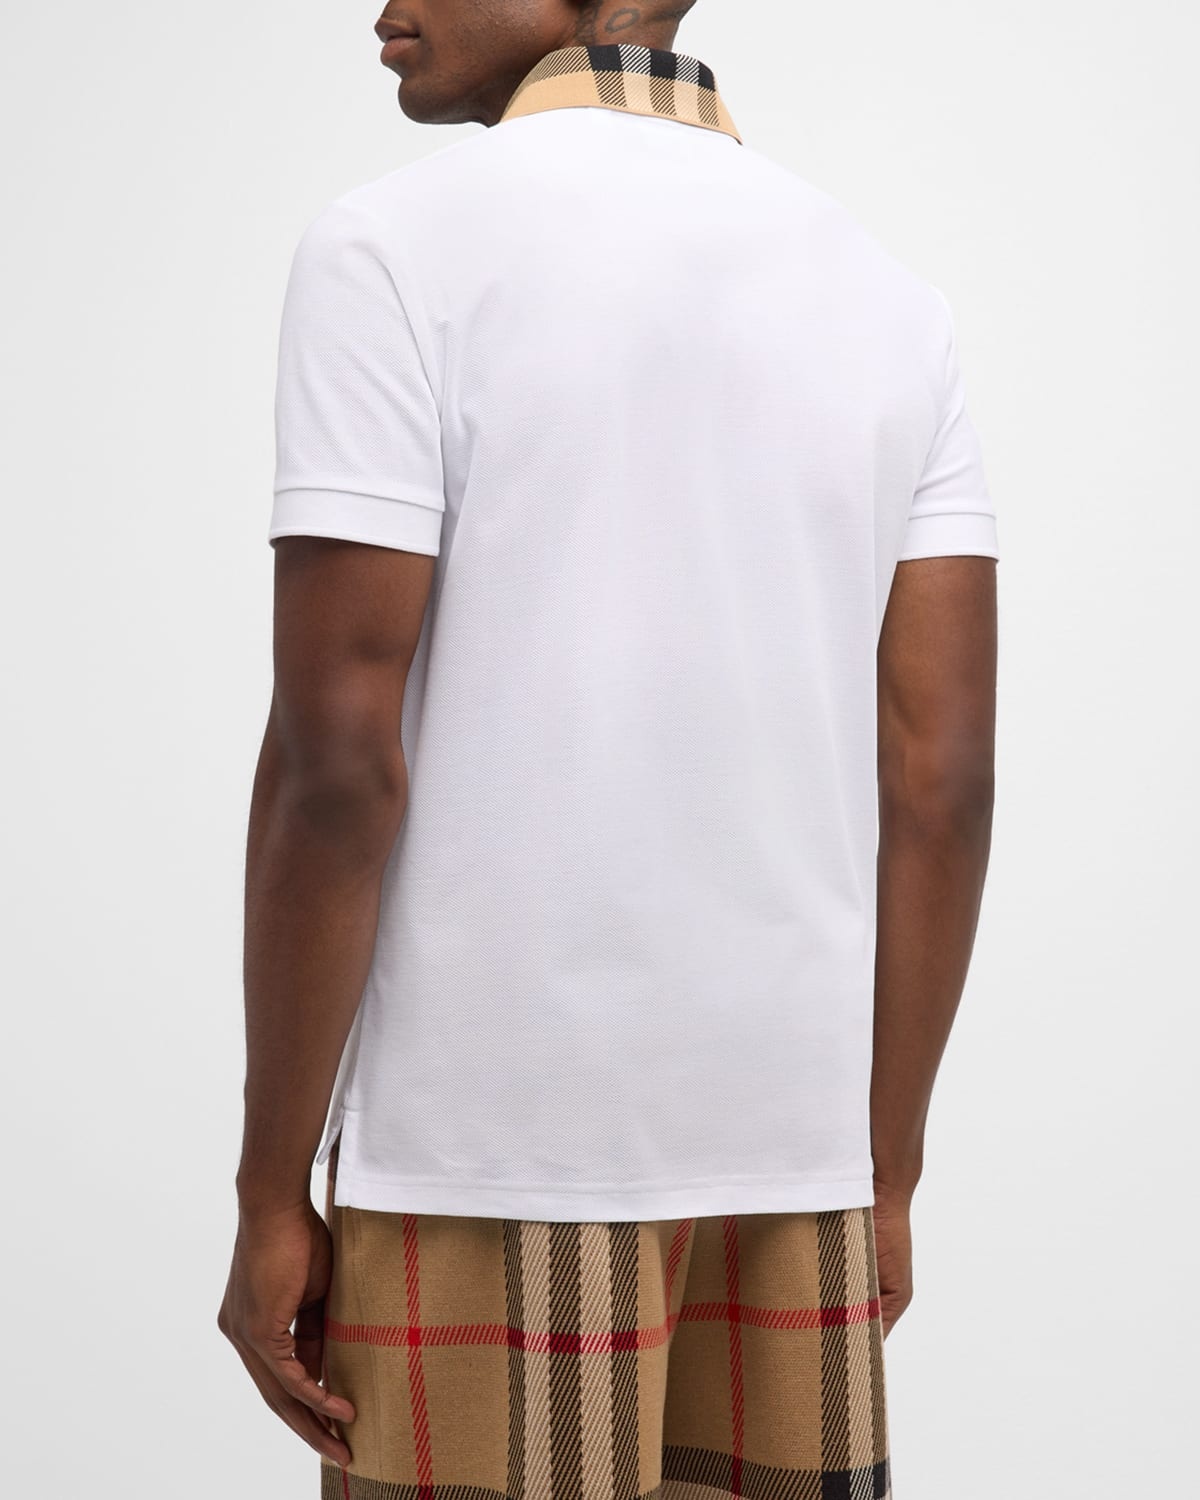 Men's Pique Polo Shirt with Check Collar - 4